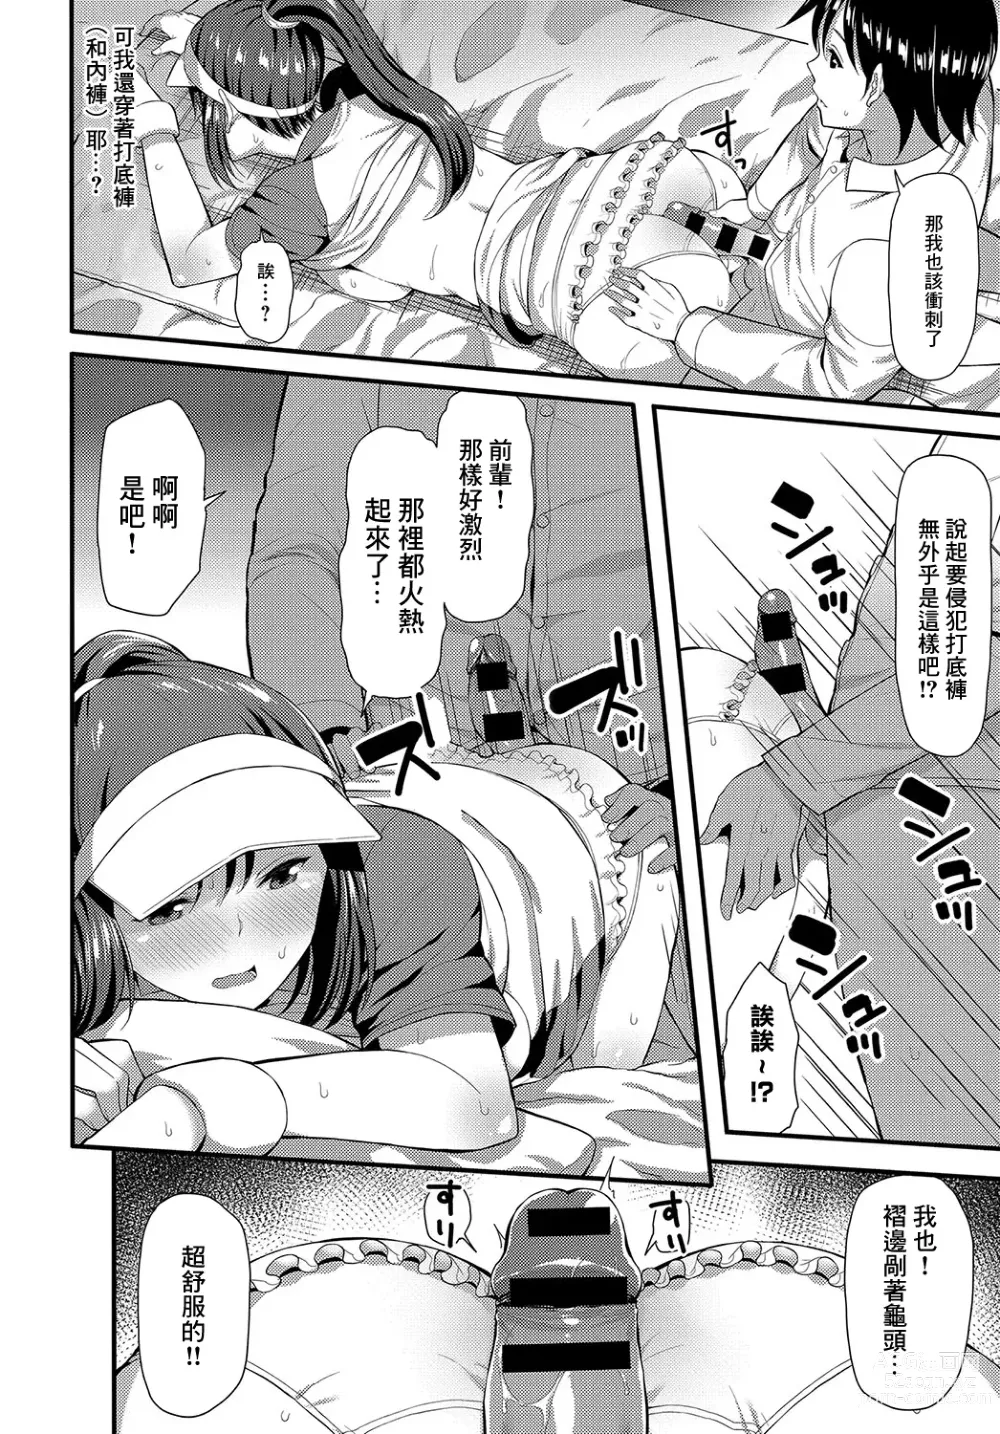 Page 10 of manga UnSkor Suko Suko!?